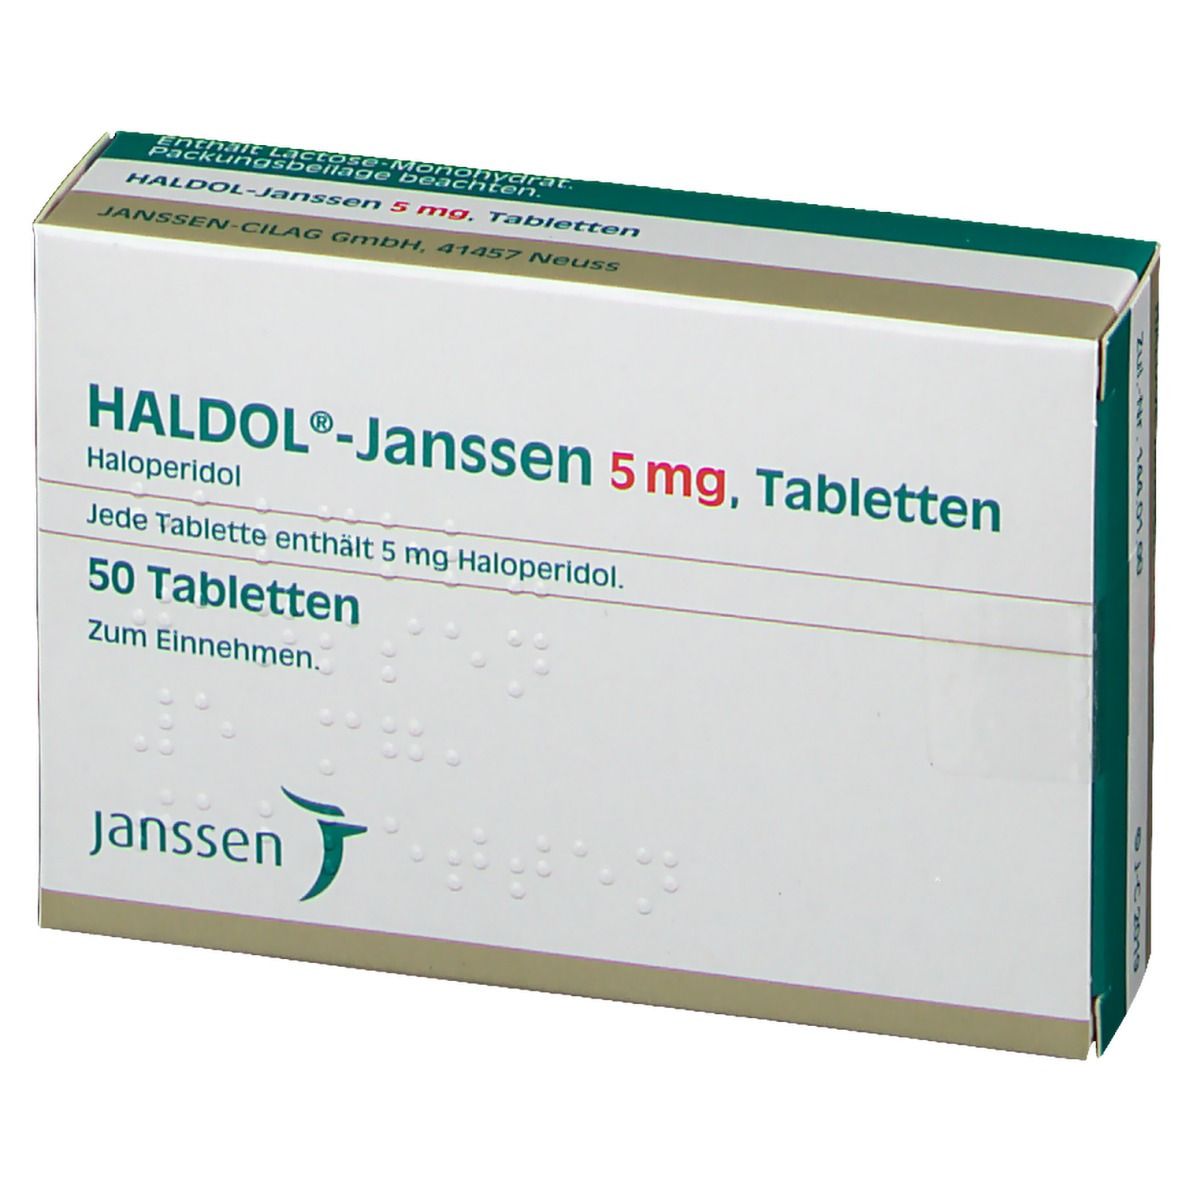 HALDOL®-Janssen 5 mg